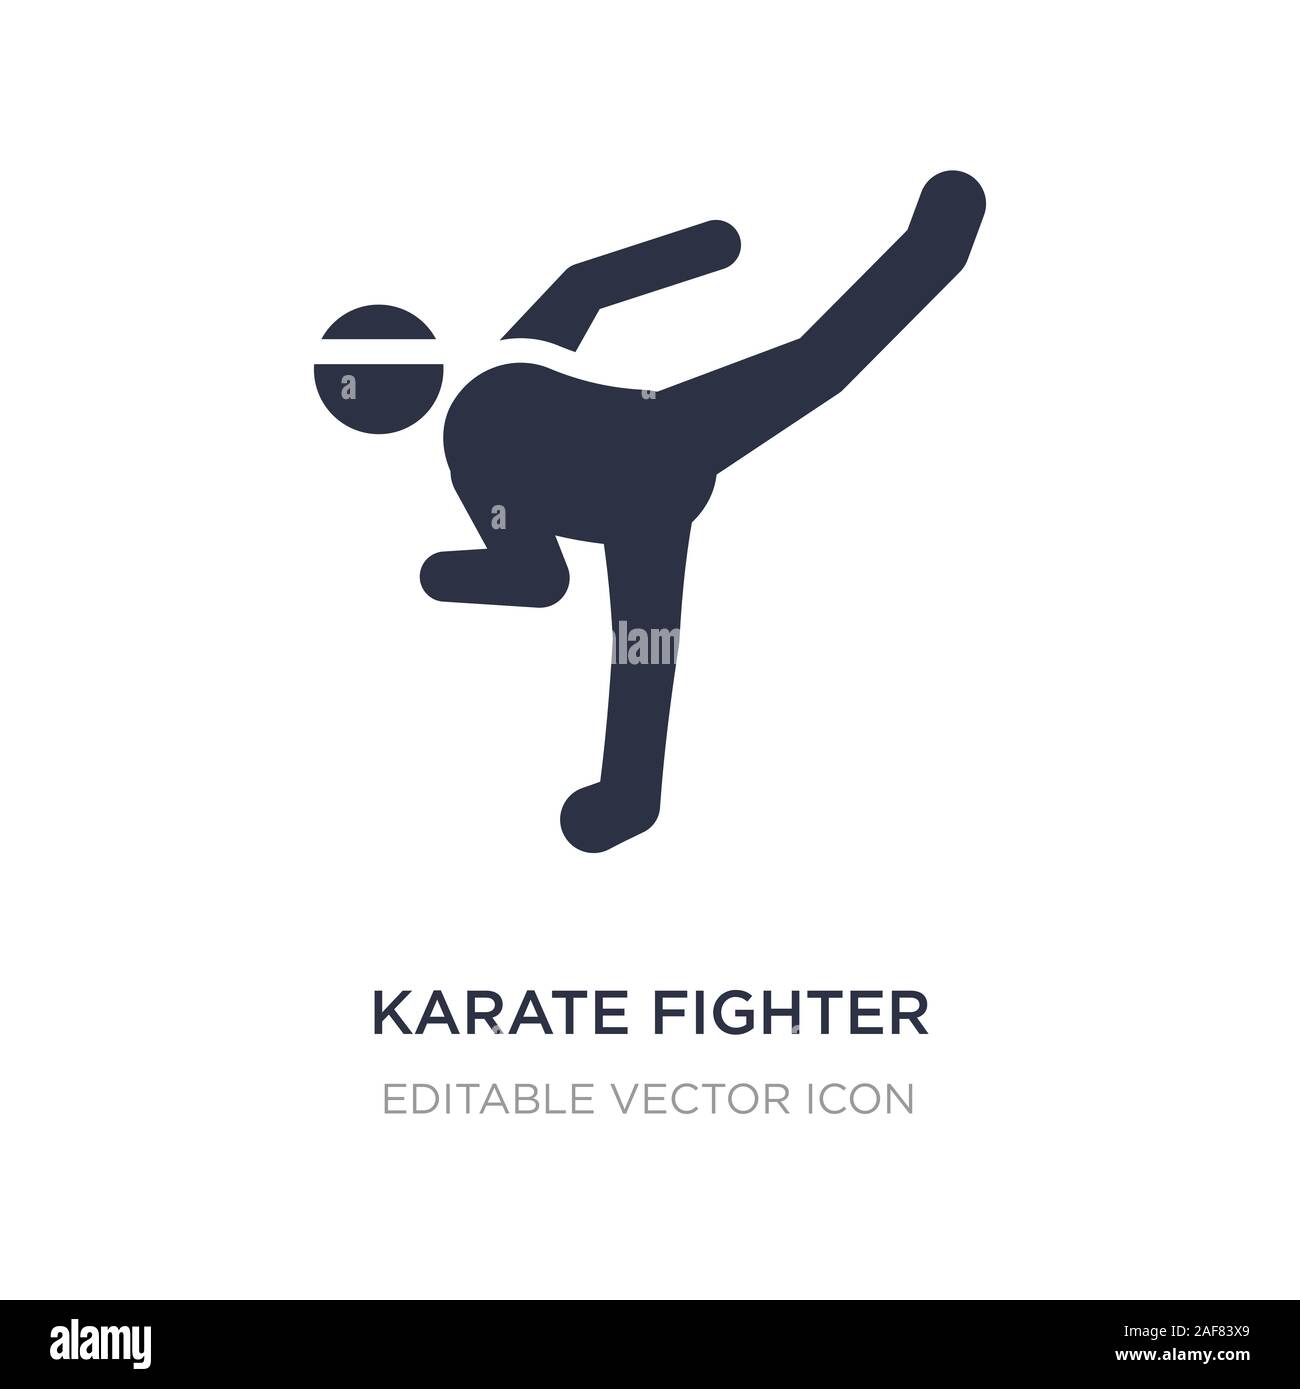 Biểu tượng võ sĩ karate là niềm tự hào của những người yêu mến môn võ này. Hình ảnh về biểu tượng này sẽ giúp bạn hiểu rõ hơn về cách tự bảo vệ và chiến đấu với dũng khí cao độ trong lòng.